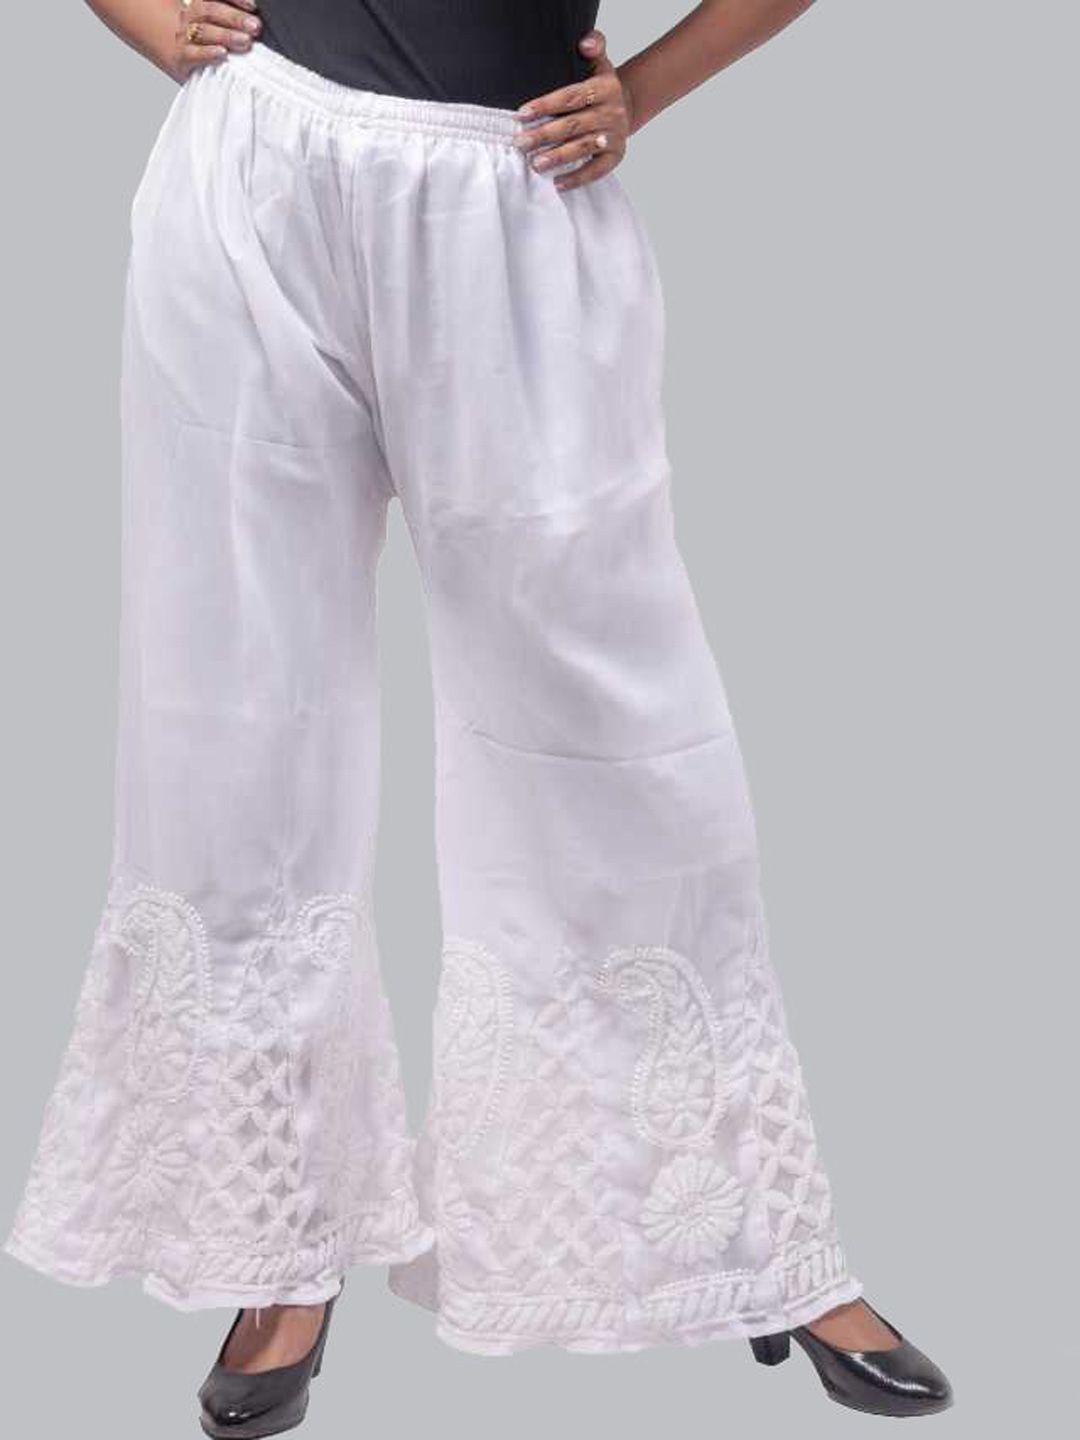 FAWOMENT Women White Chikankari Hand Embroiderd Georgette Sharara Pyjamas Price in India